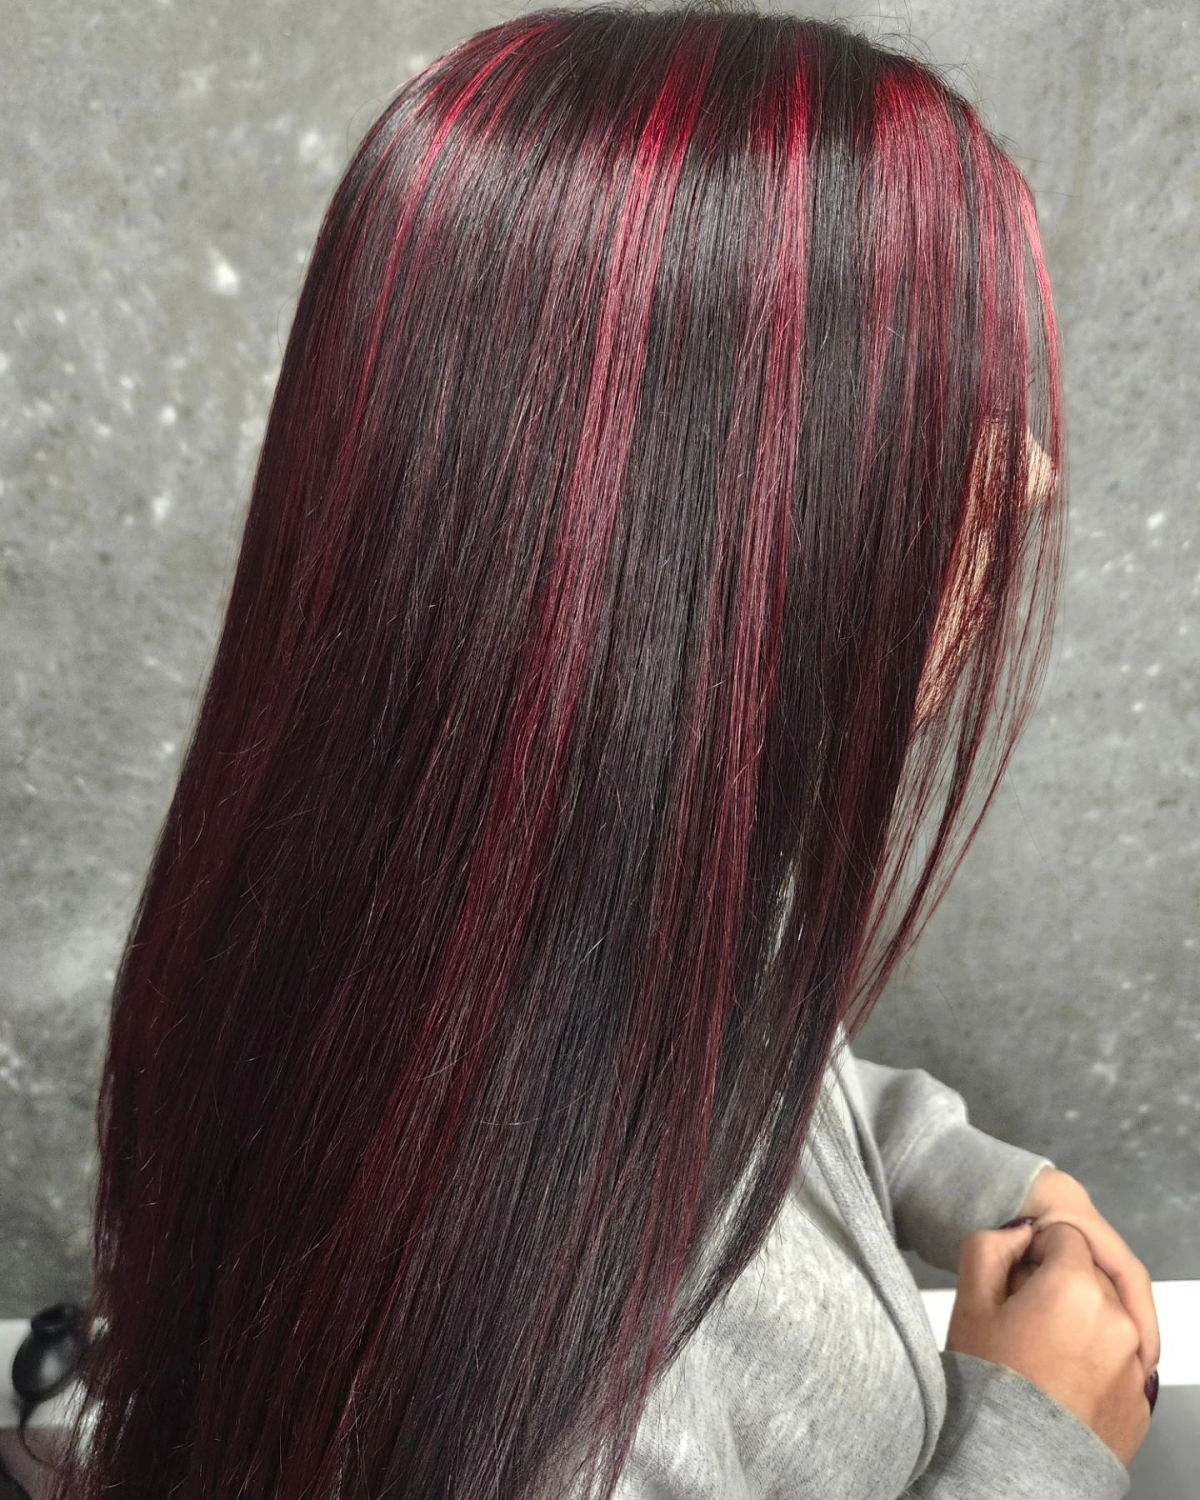 subtle red highlights on darker hair